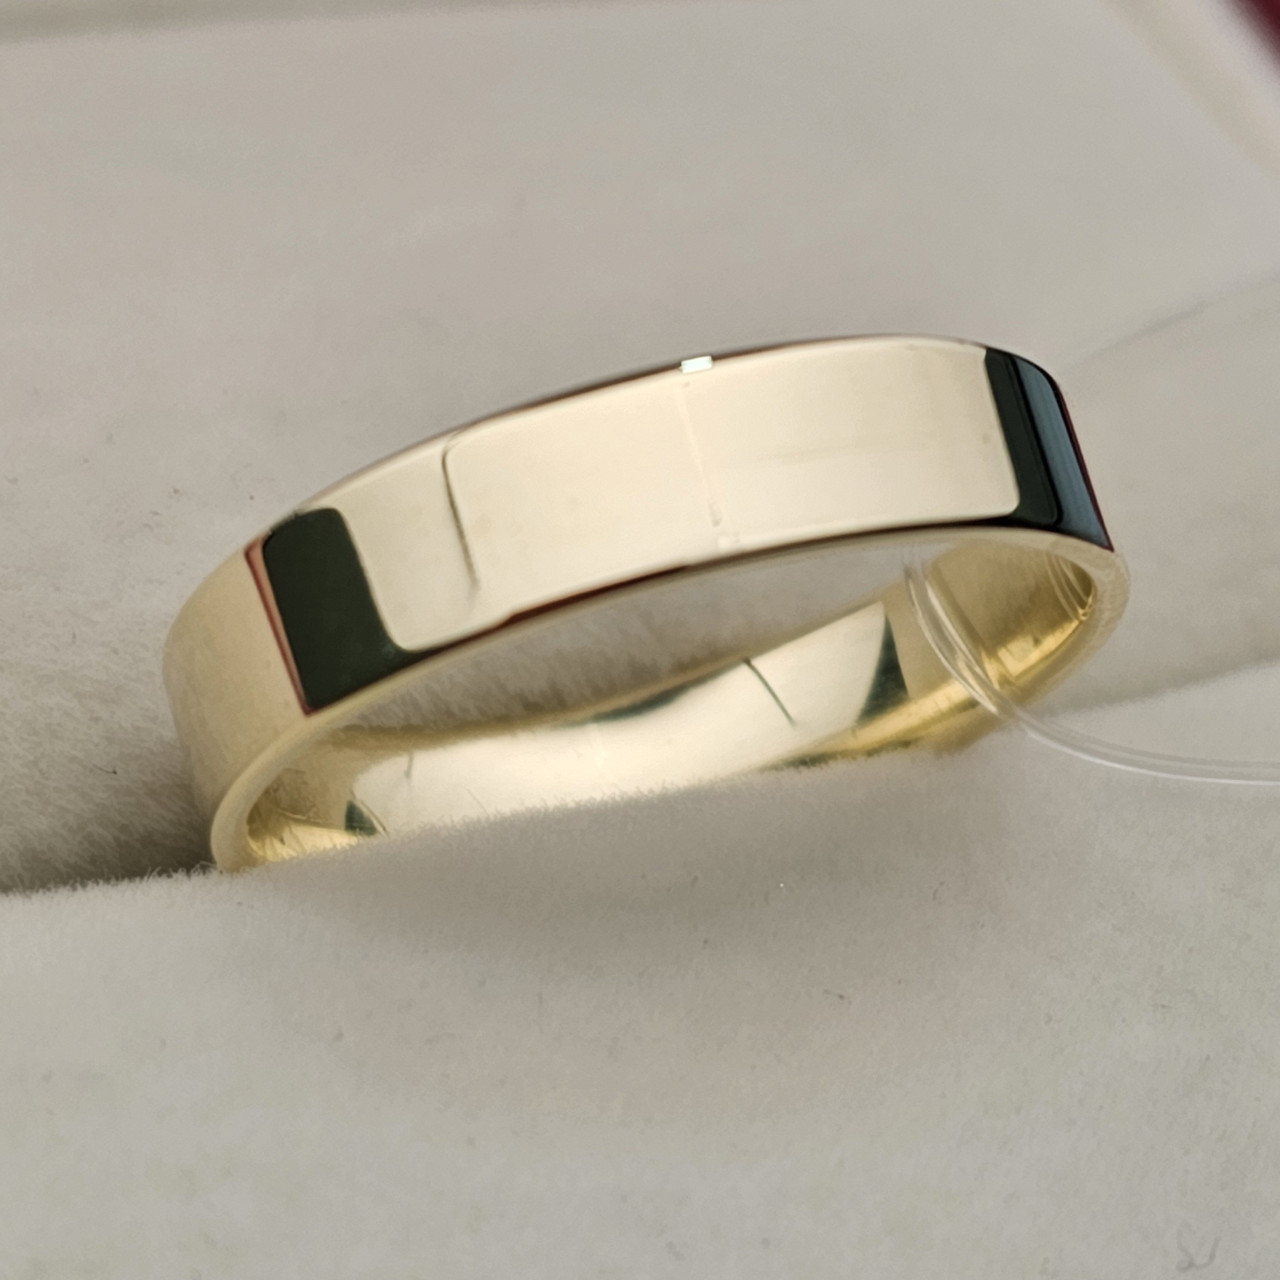 Обручальное кольцо 2.82гр, размер 18.5/4мм Желтое золото 585 проба